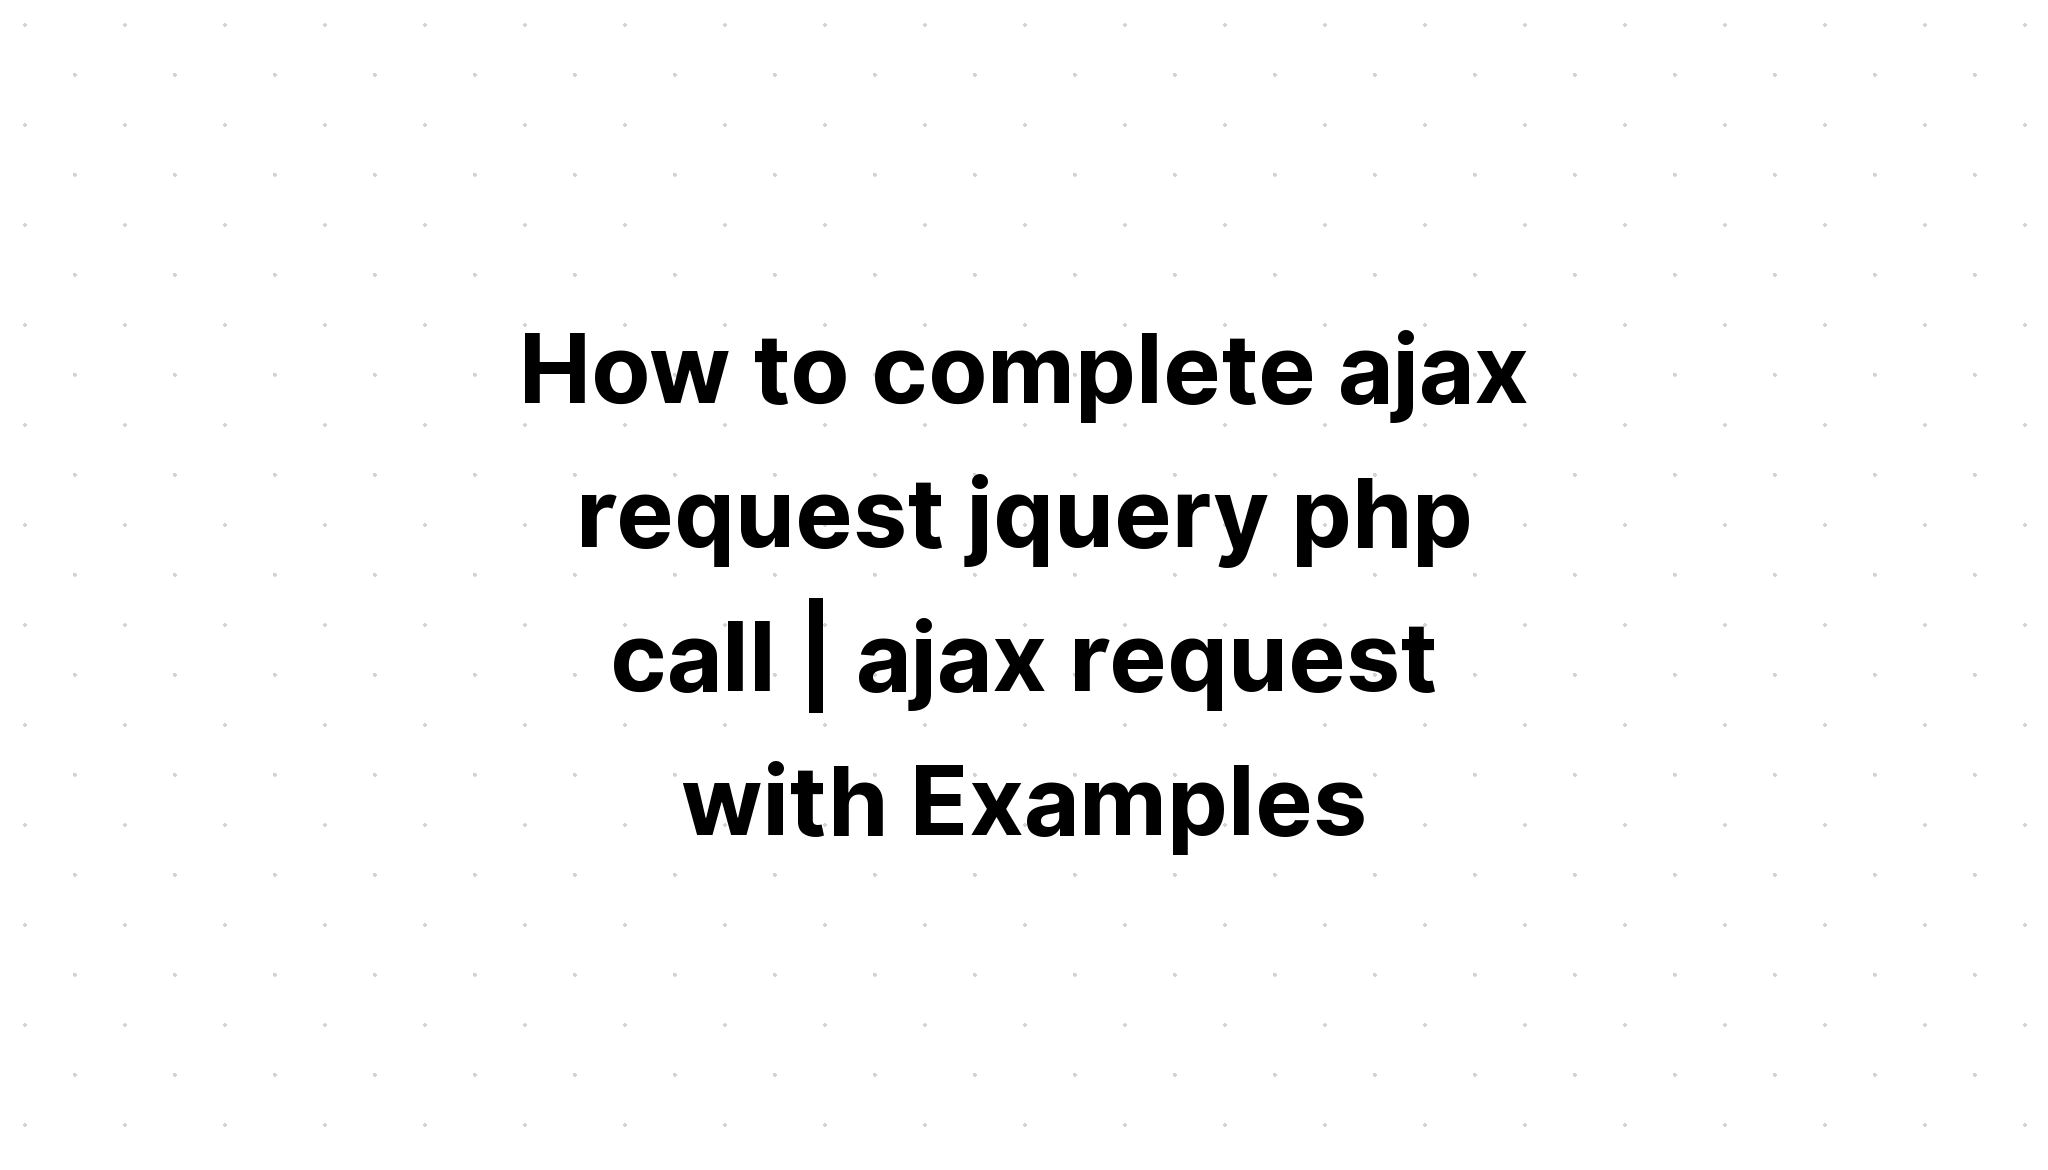 Cách hoàn thành cuộc gọi jquery php yêu cầu ajax. yêu cầu ajax với các ví dụ